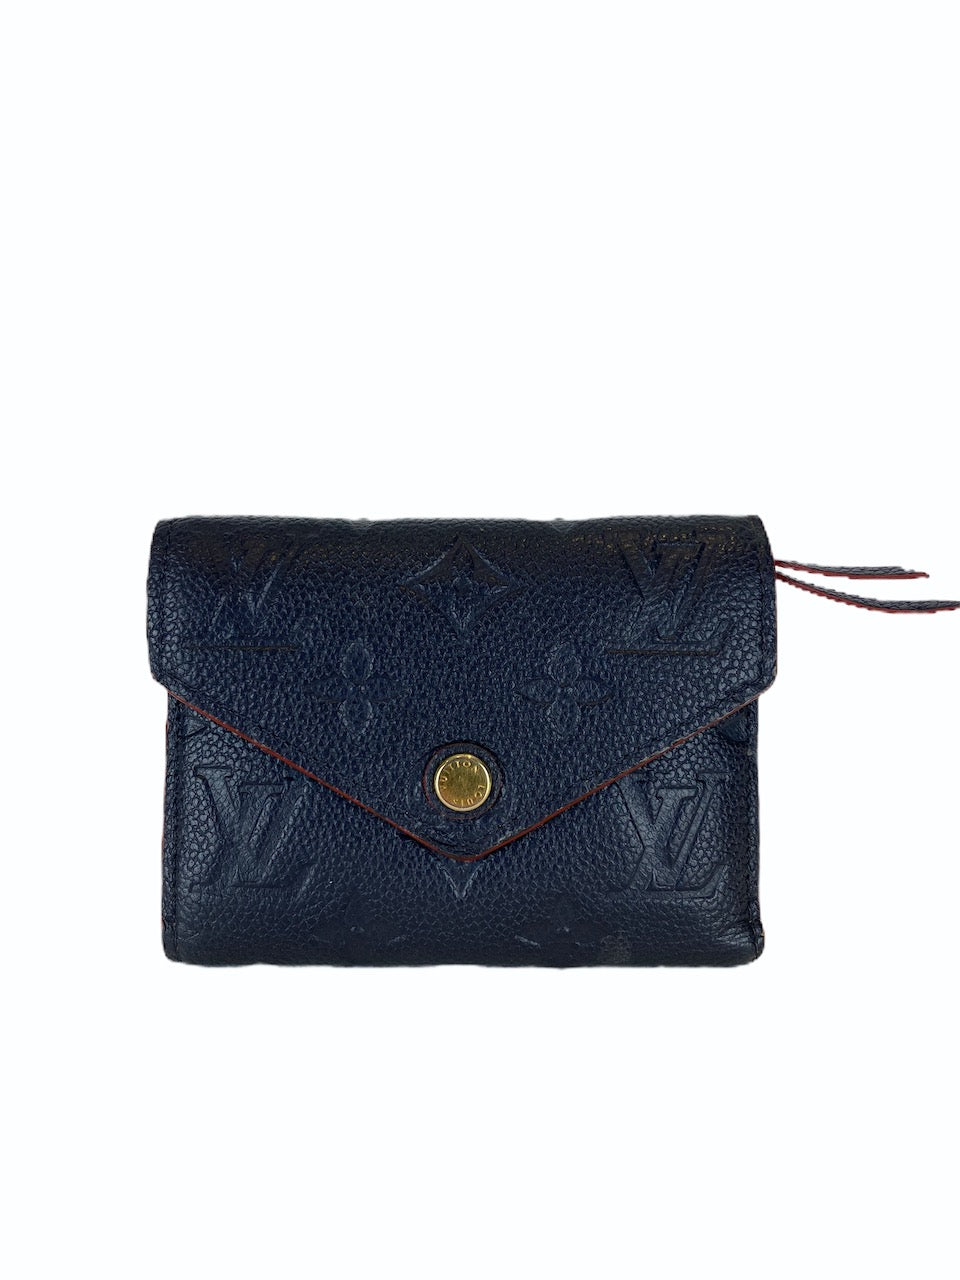 Louis Vuitton Navy Empreinte Victorine Wallet  - As Seen on Instagram 2/9/20 - Siopaella Designer Exchange